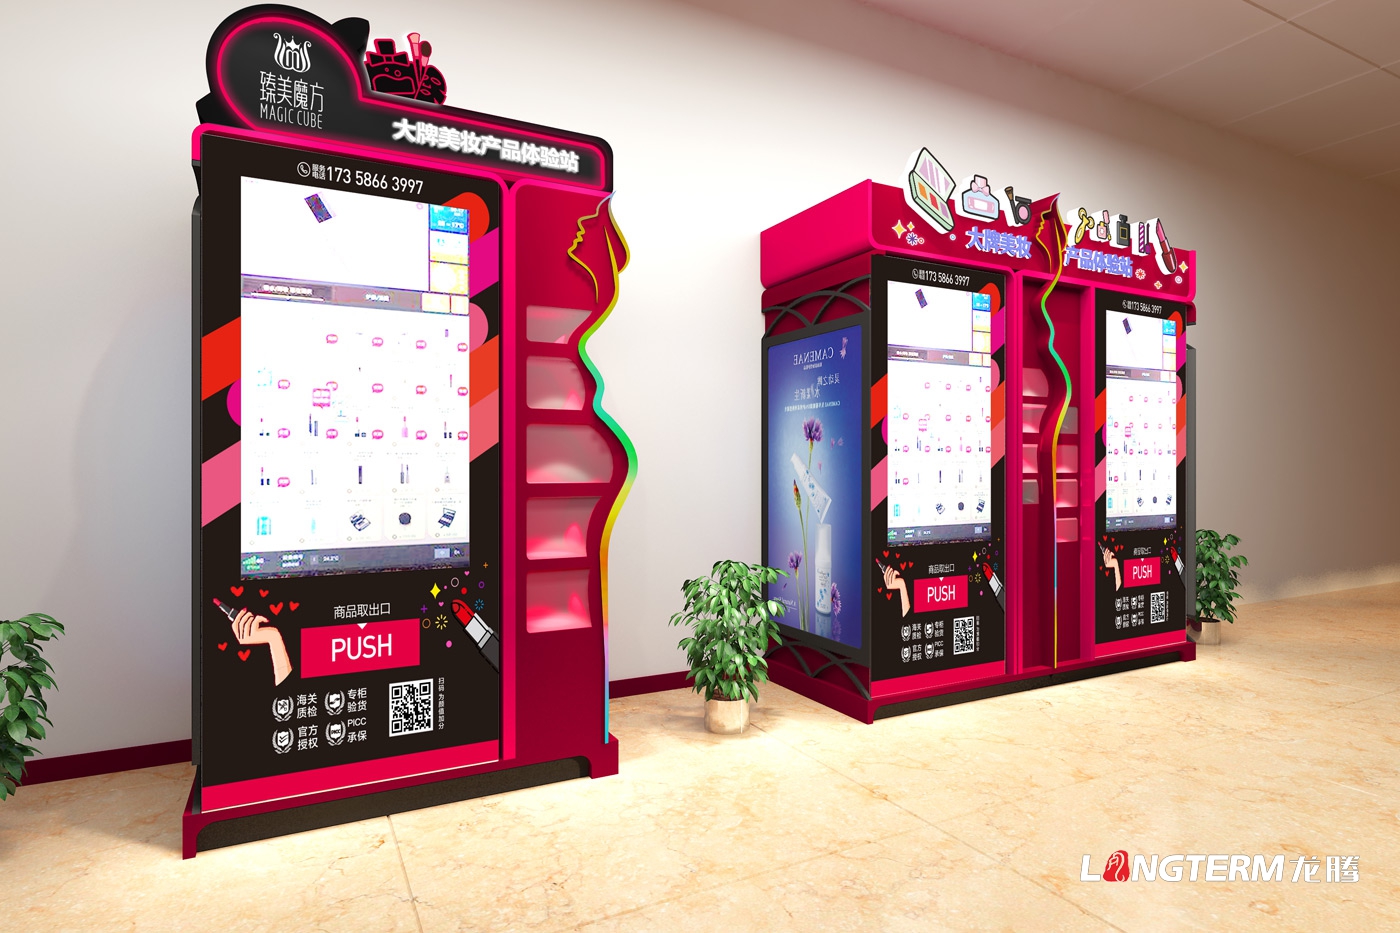 四川臻美魔方科技有限公司委托龙腾设计新零售机的外观造型